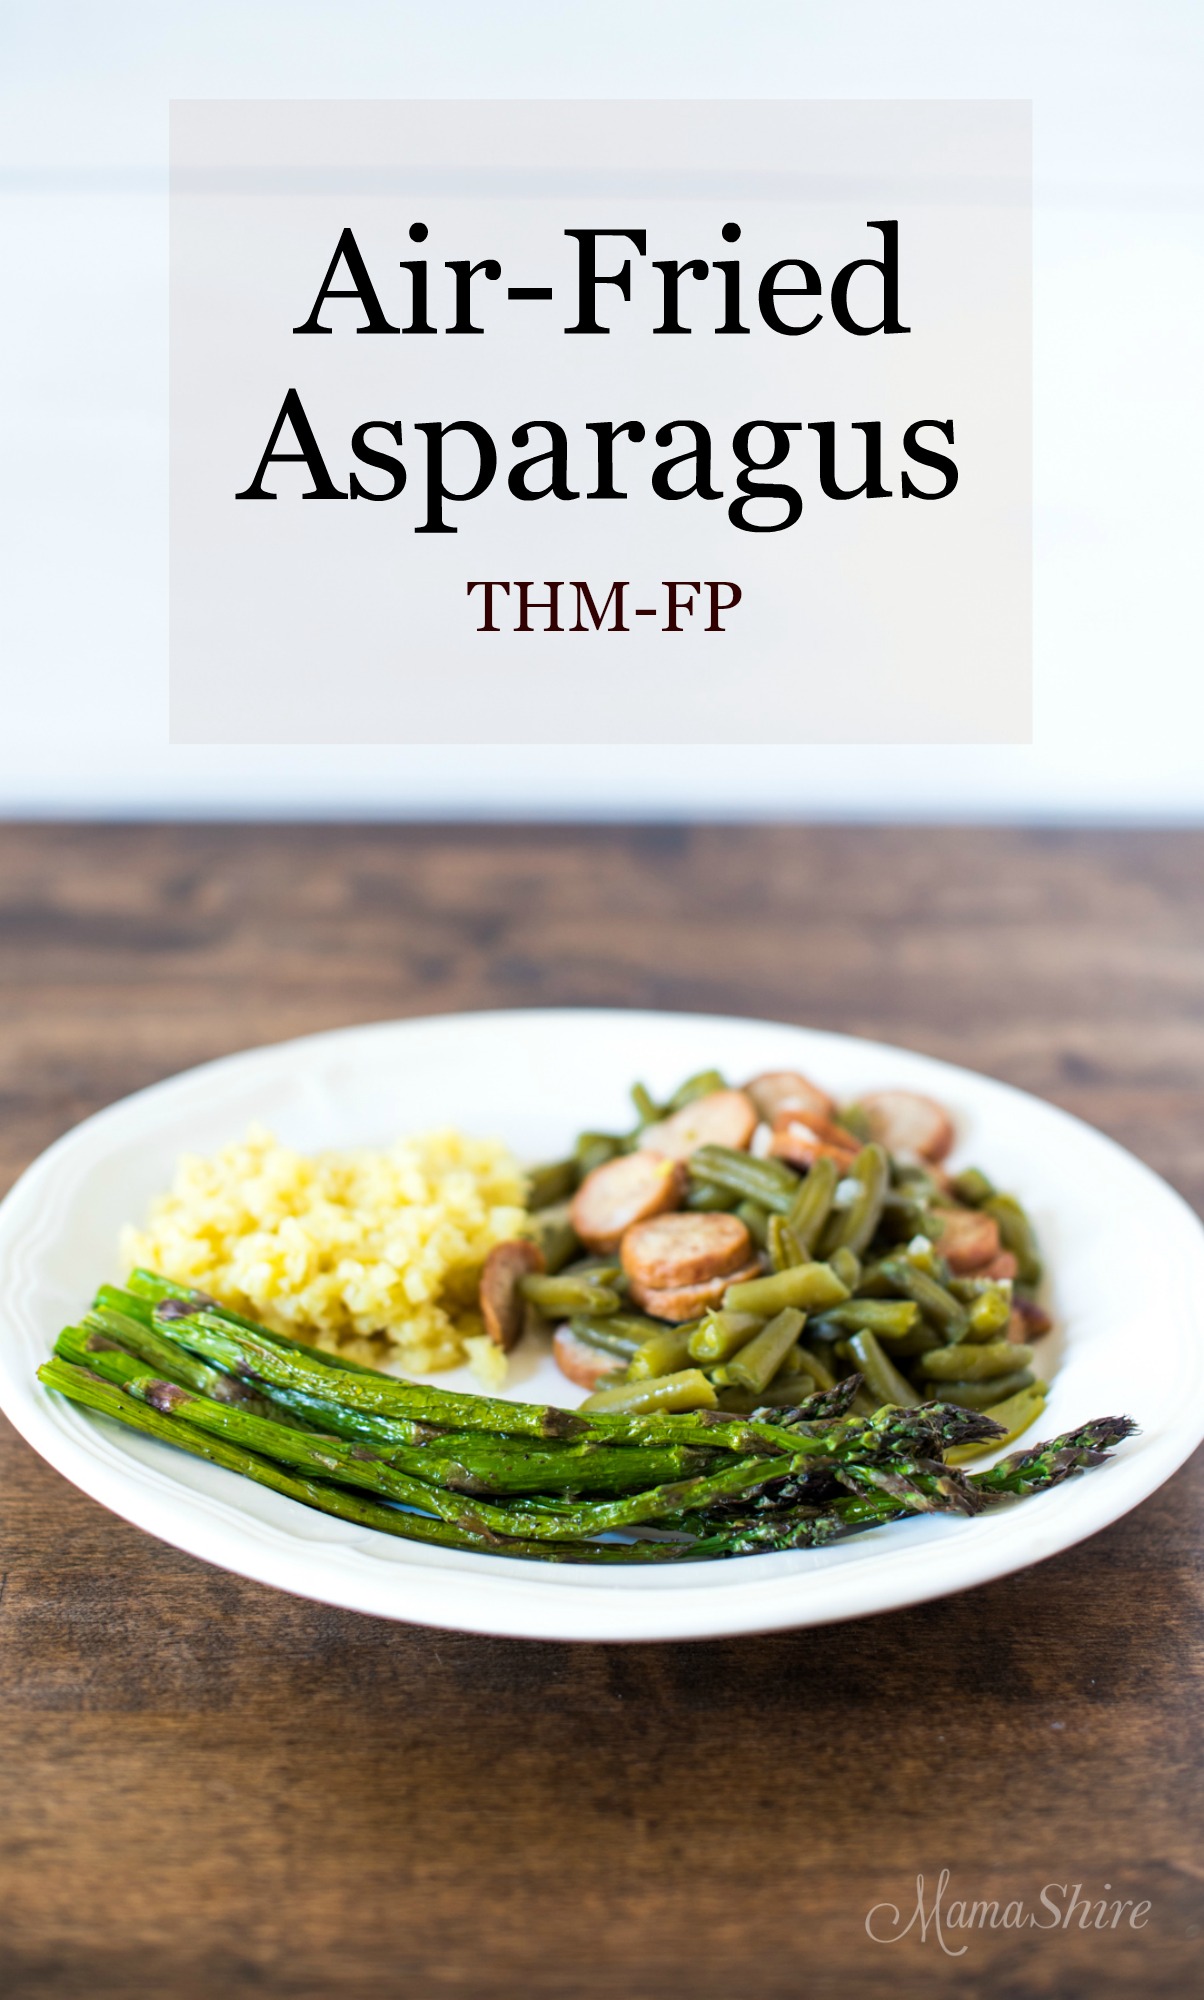 Air-Fried Asparagus